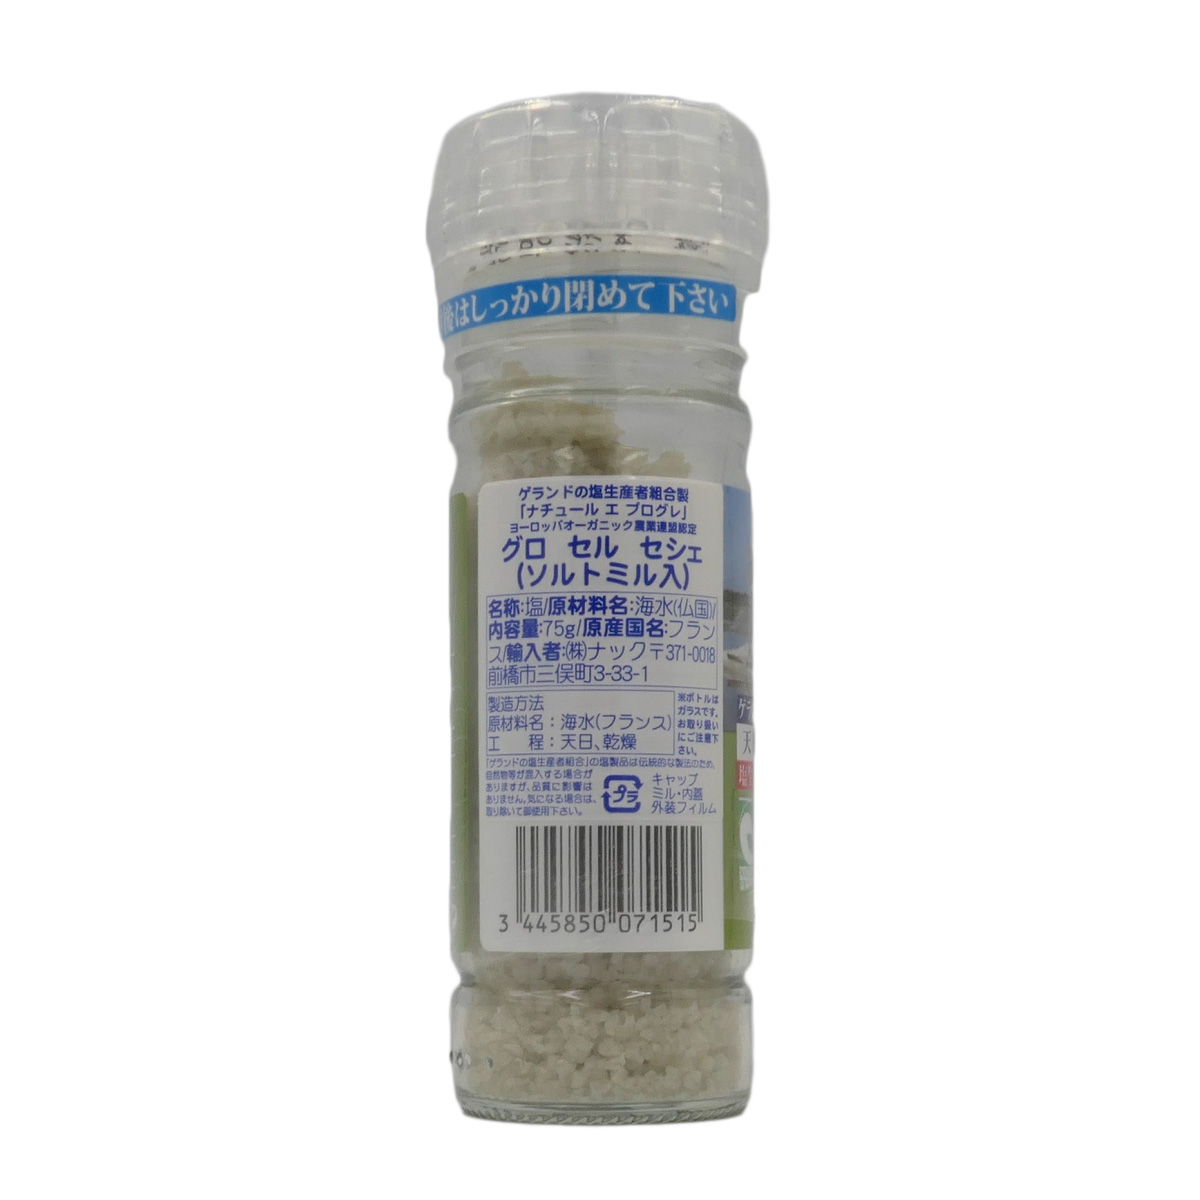 ゲランドの塩生産者組合の塩 商品情報 | 輸入元株式会社ナック